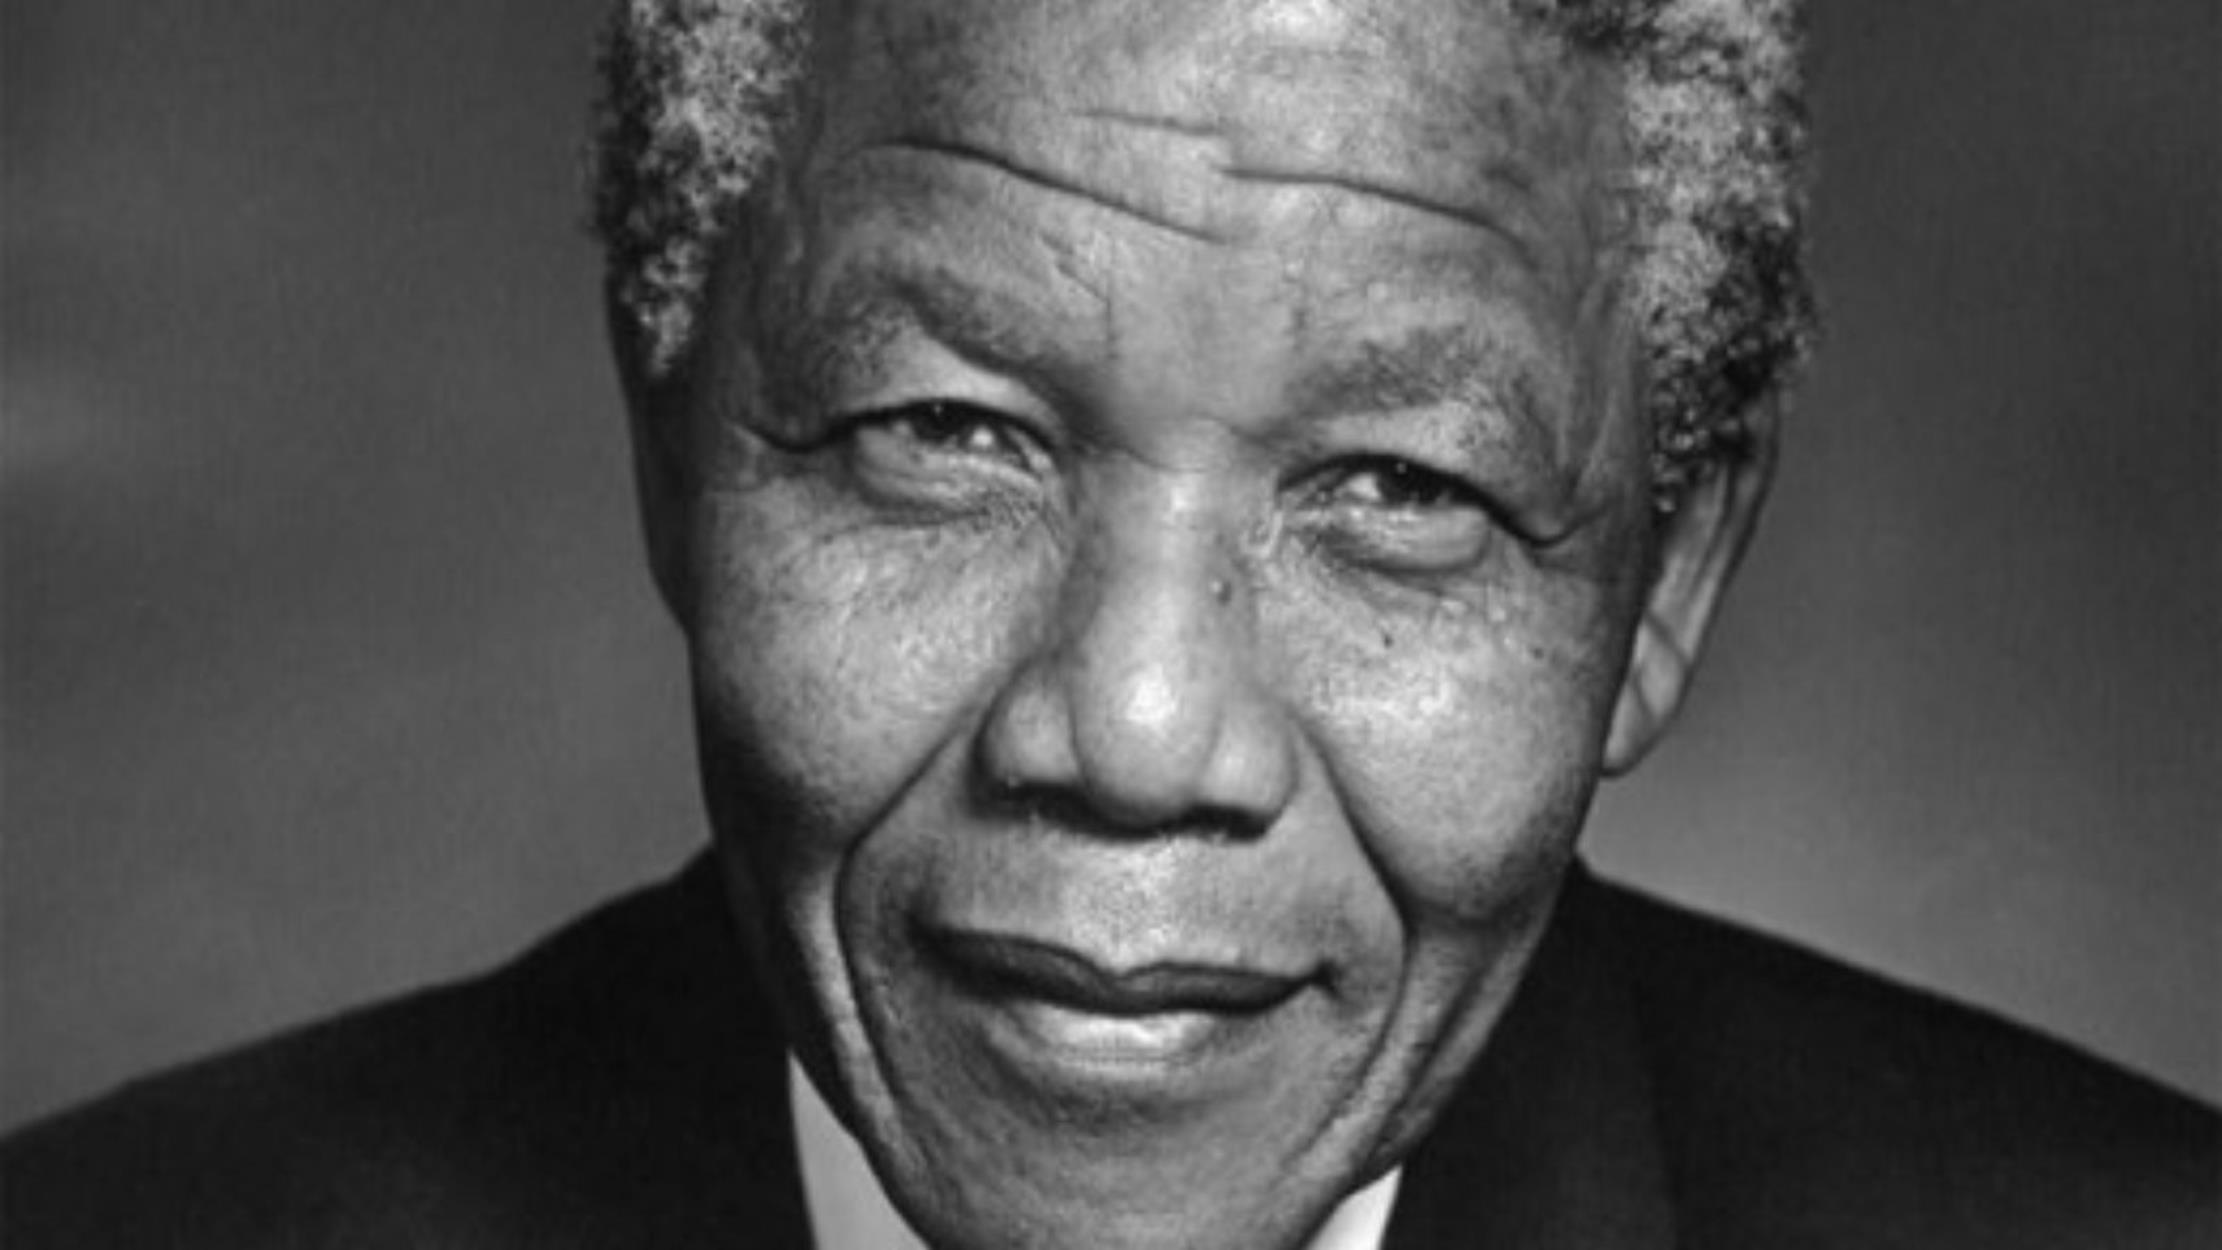 Διεθνής Ημέρα Νέλσον Μαντέλα